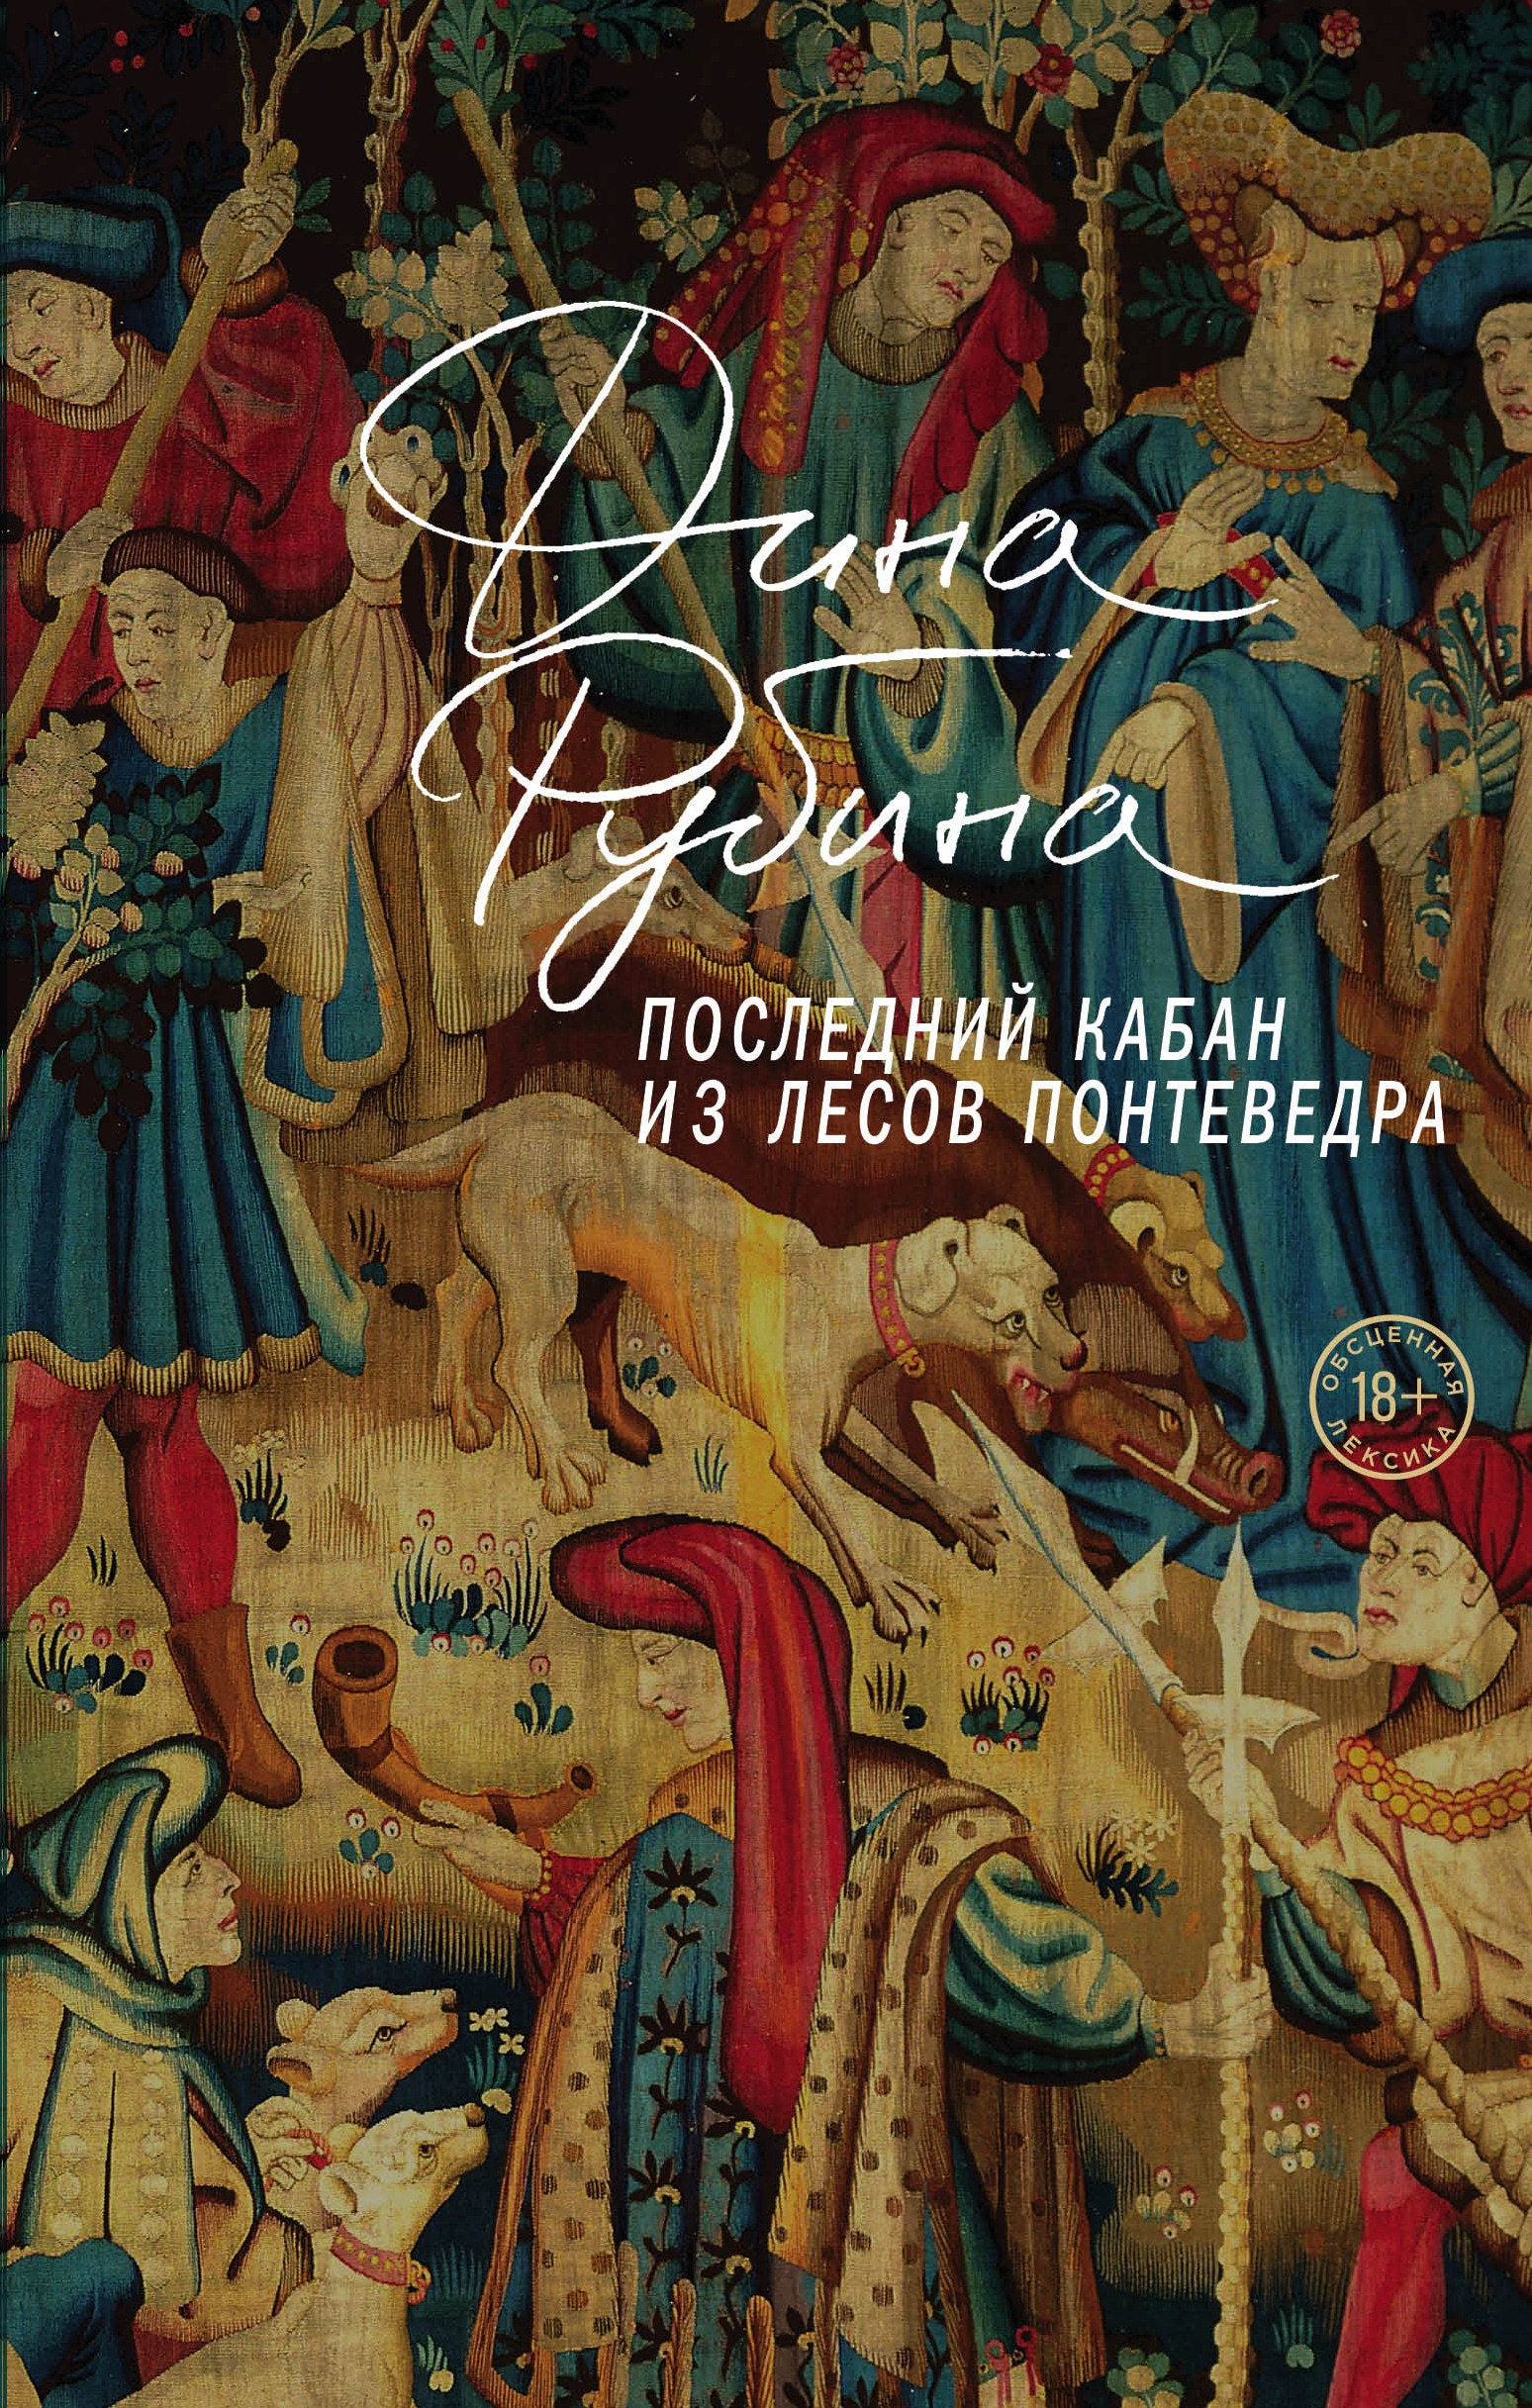 Book “Последний кабан из лесов Понтеведра” by Дина Рубина — September 1, 2022